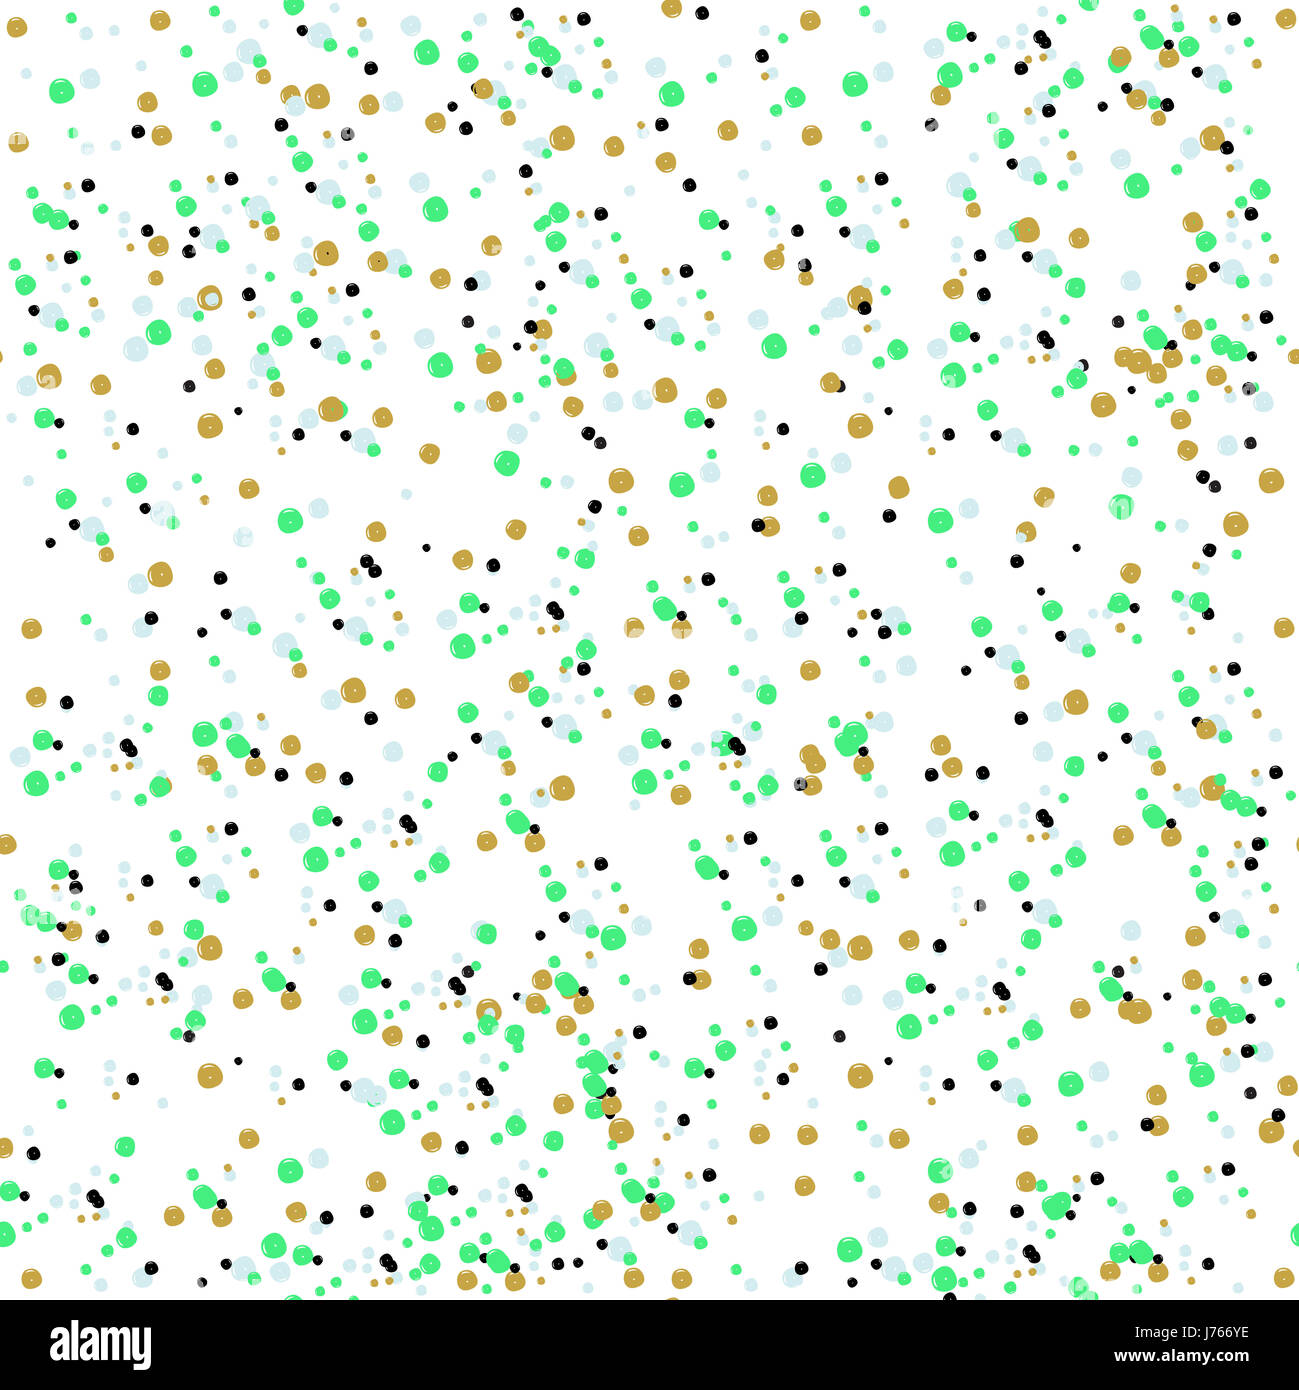 Seamless pattern astratti con puntini colorati Foto Stock